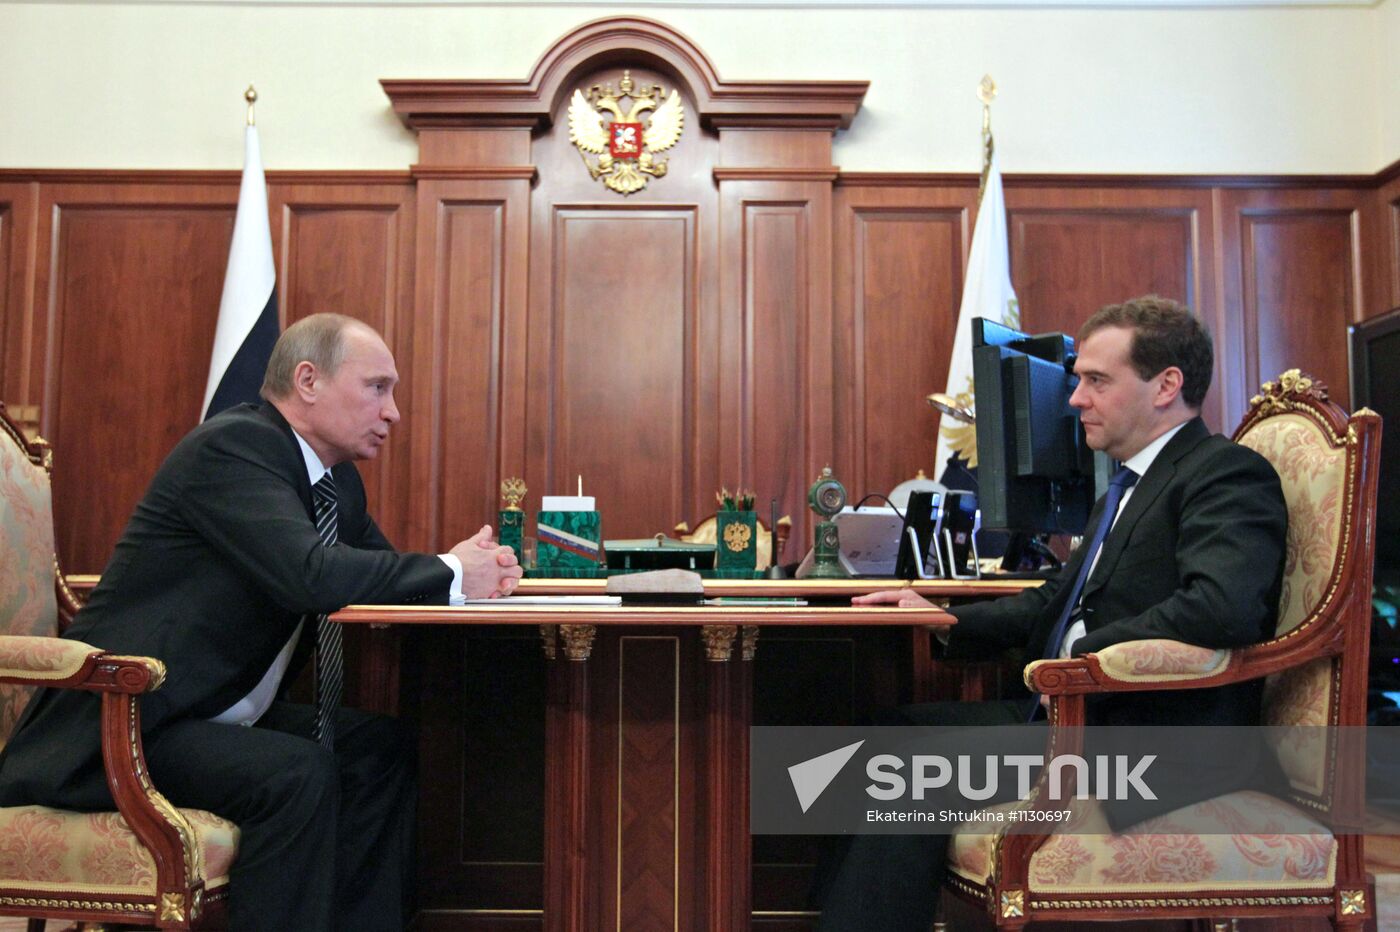 Vladimir Putin meets with Dmitry Medvedev in Kremlin